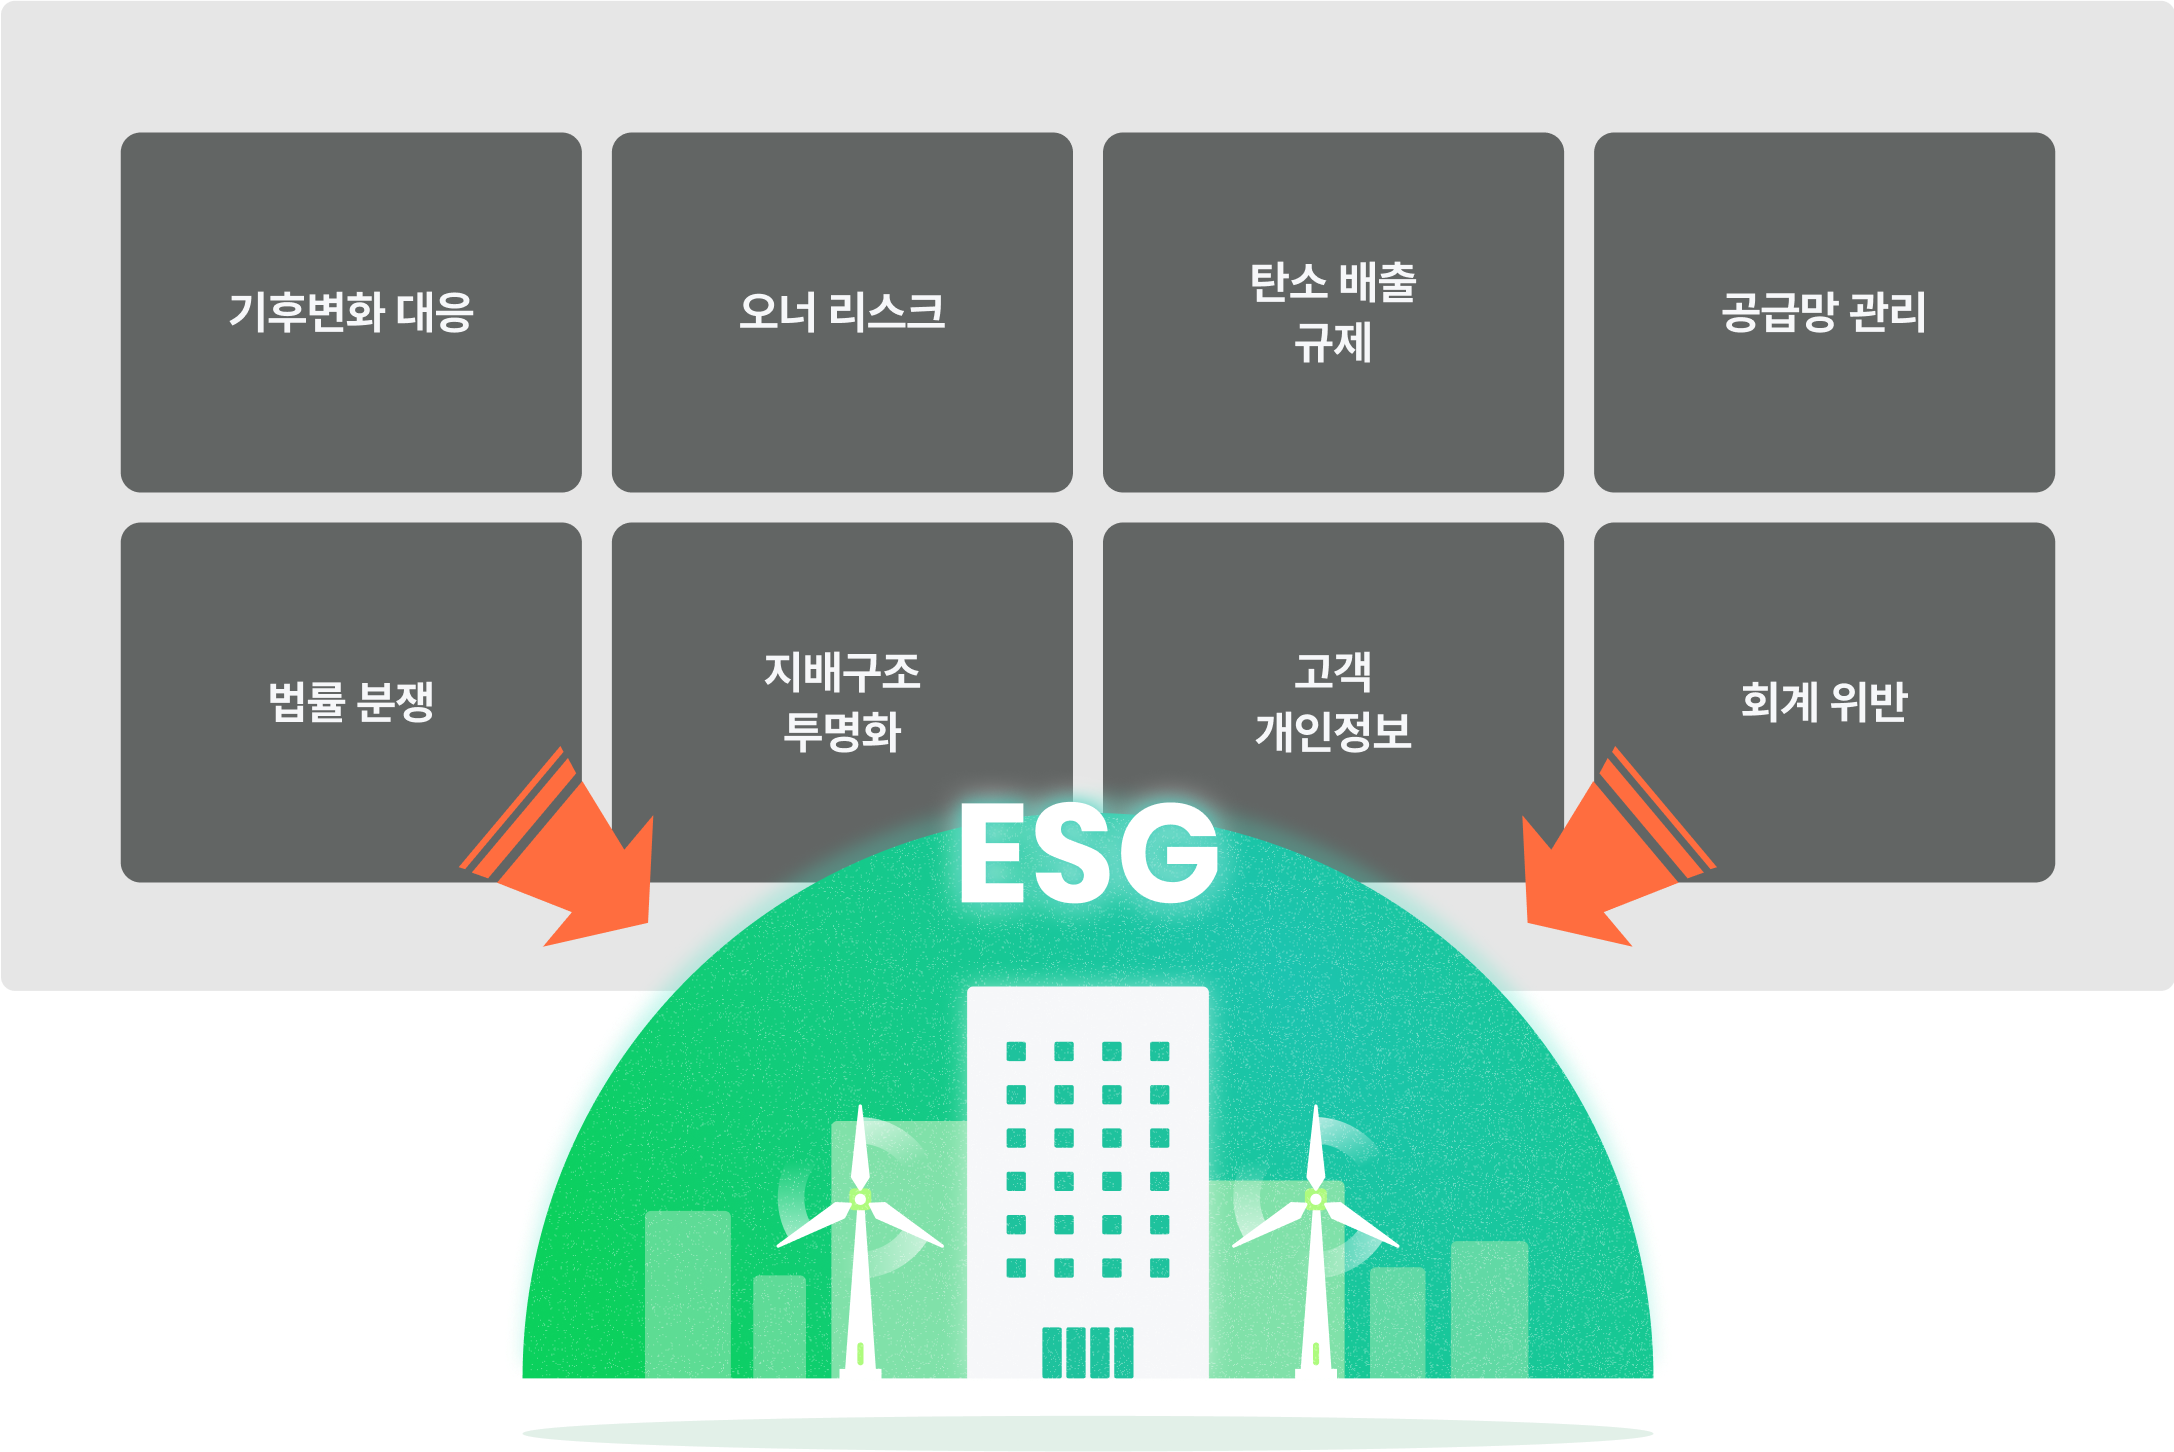 ESG 경영 전략 전문 채용 기후변화대응 오너 리스트 탄소 배출 규제 지배구조투명화 고객개인정보 회계 위반